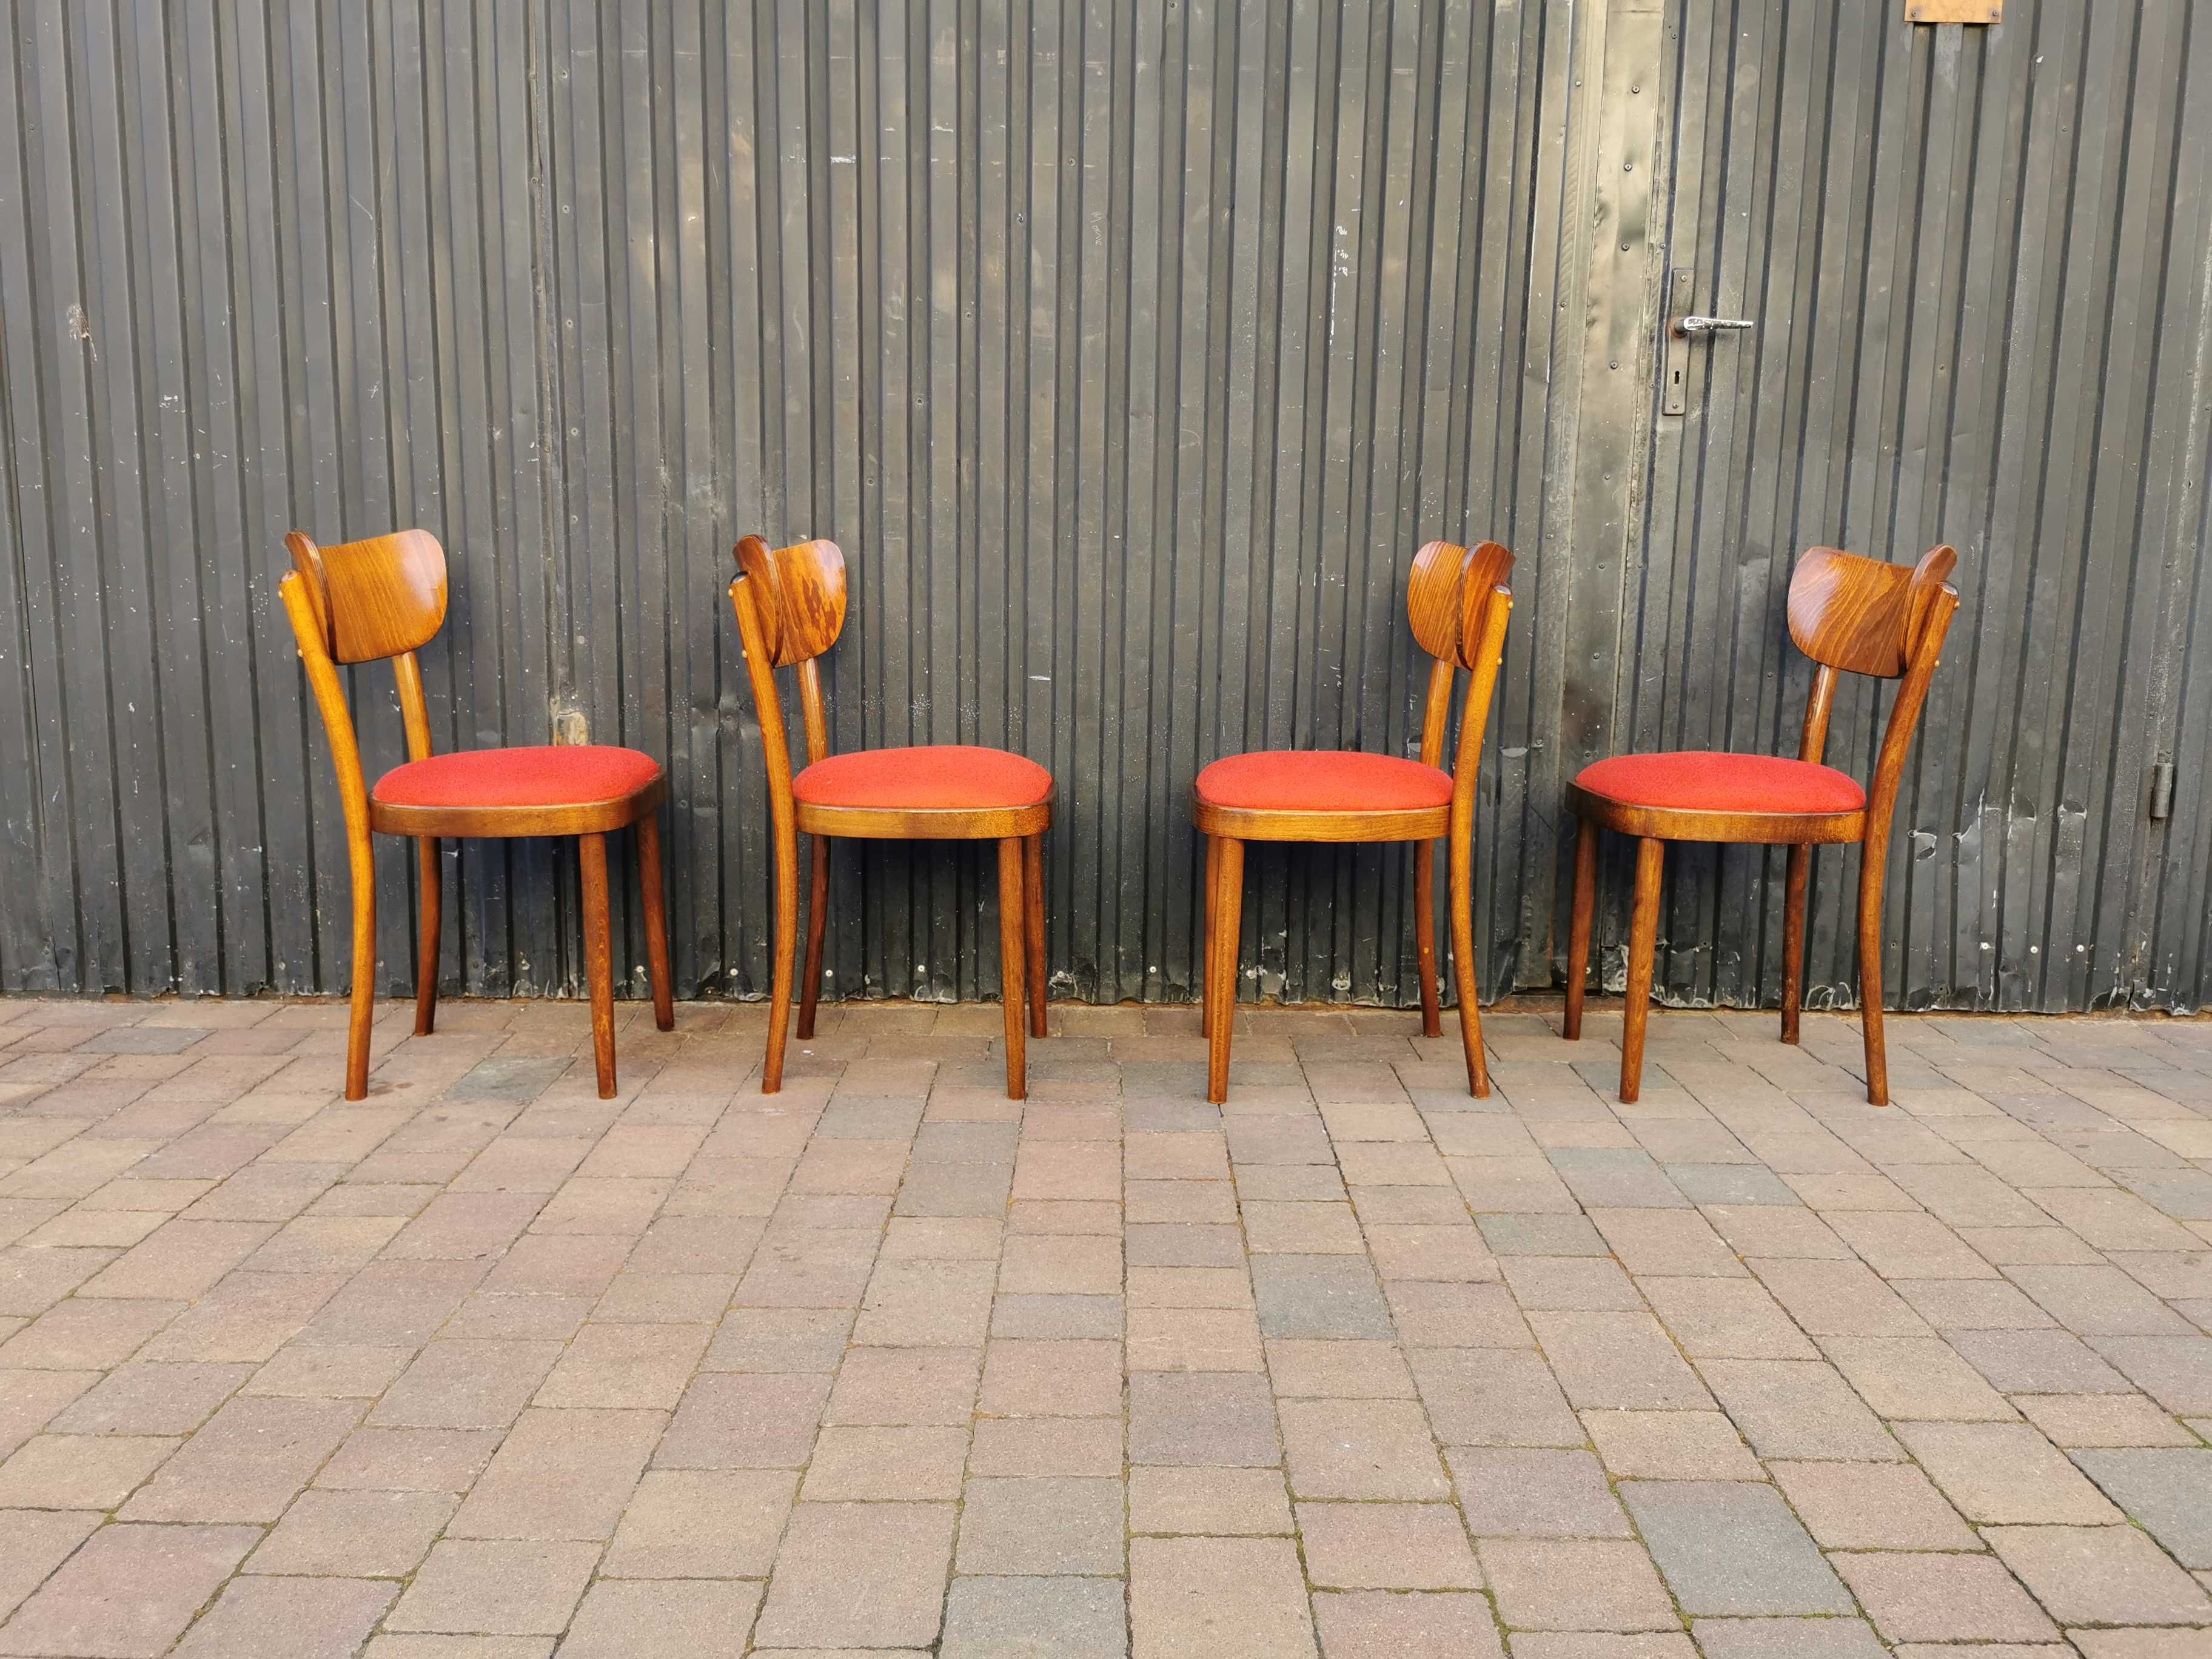 Krzesła TON (Thonet), Czechosłowacja '60, Vintage, PRL design, Retro